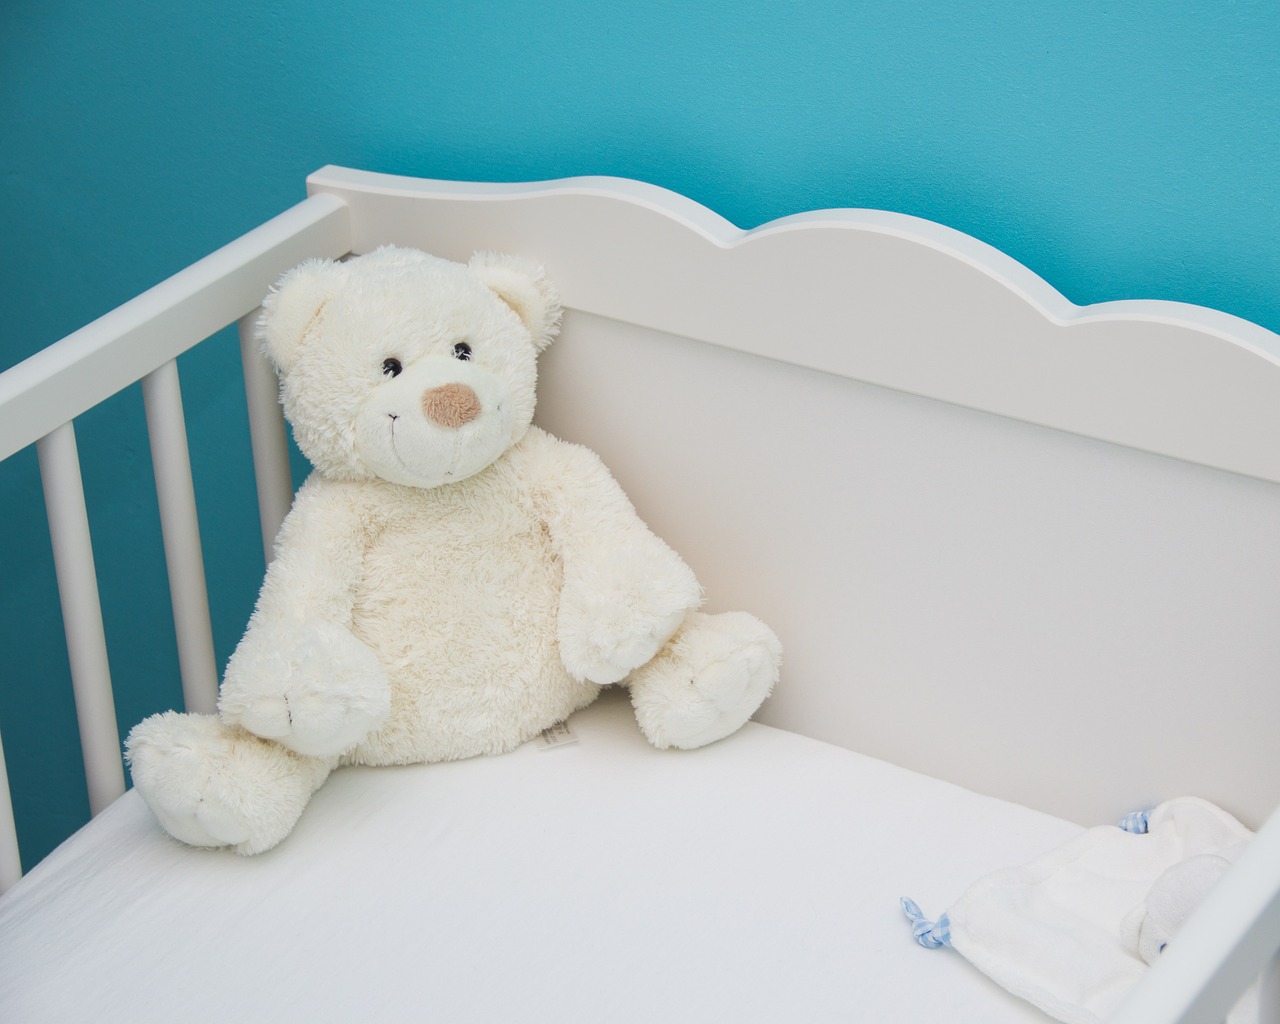 Smart Crib, Tempat Tidur Otomatis untuk Si Kecil yang Baru Lahir